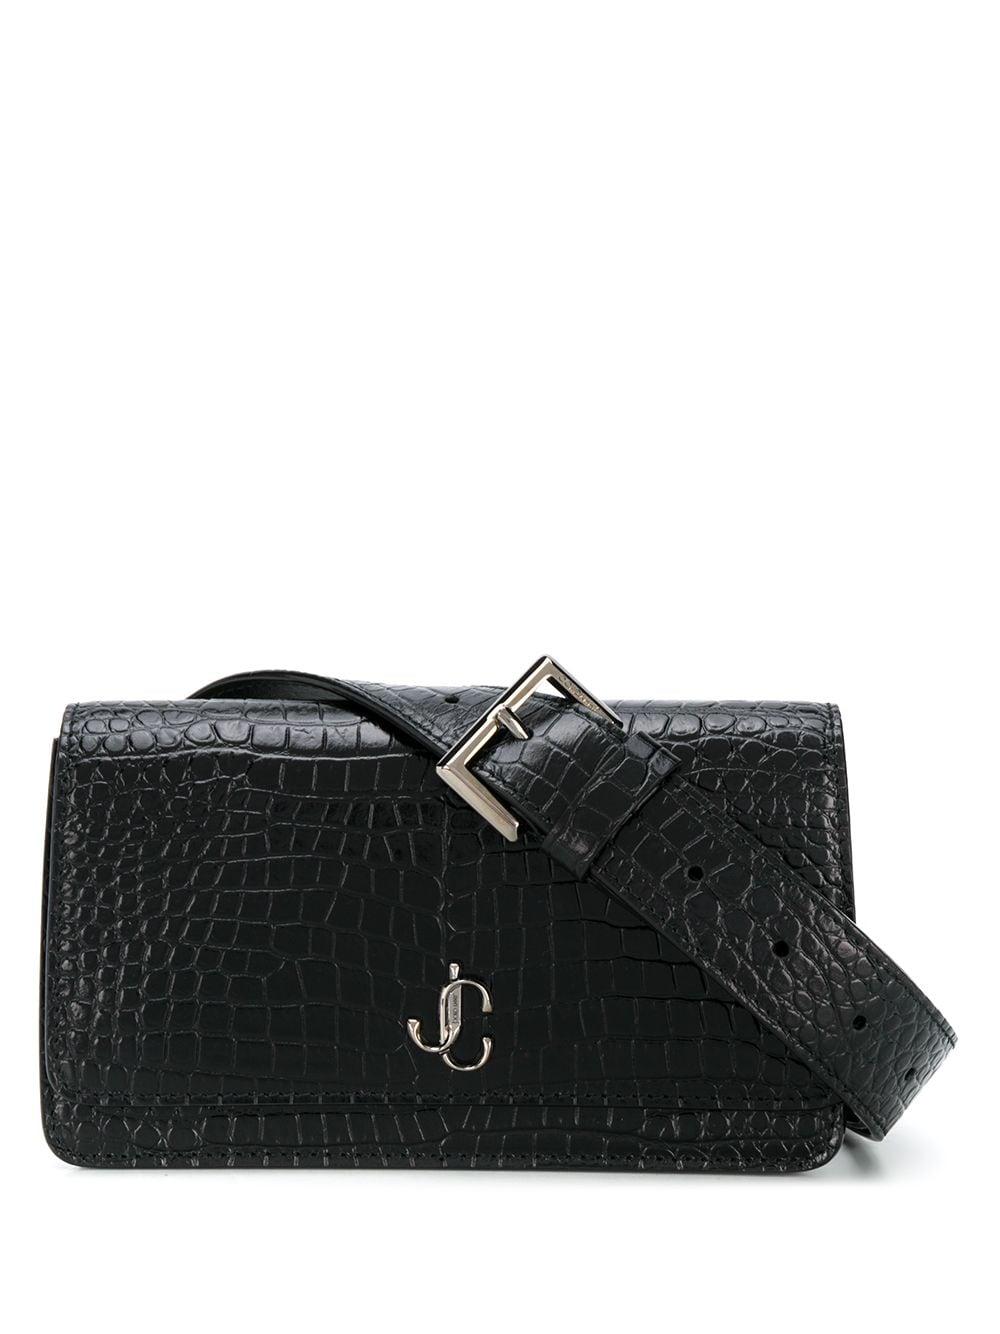 Jimmy Choo Leather Varenne Belt Bag in Black - Lyst